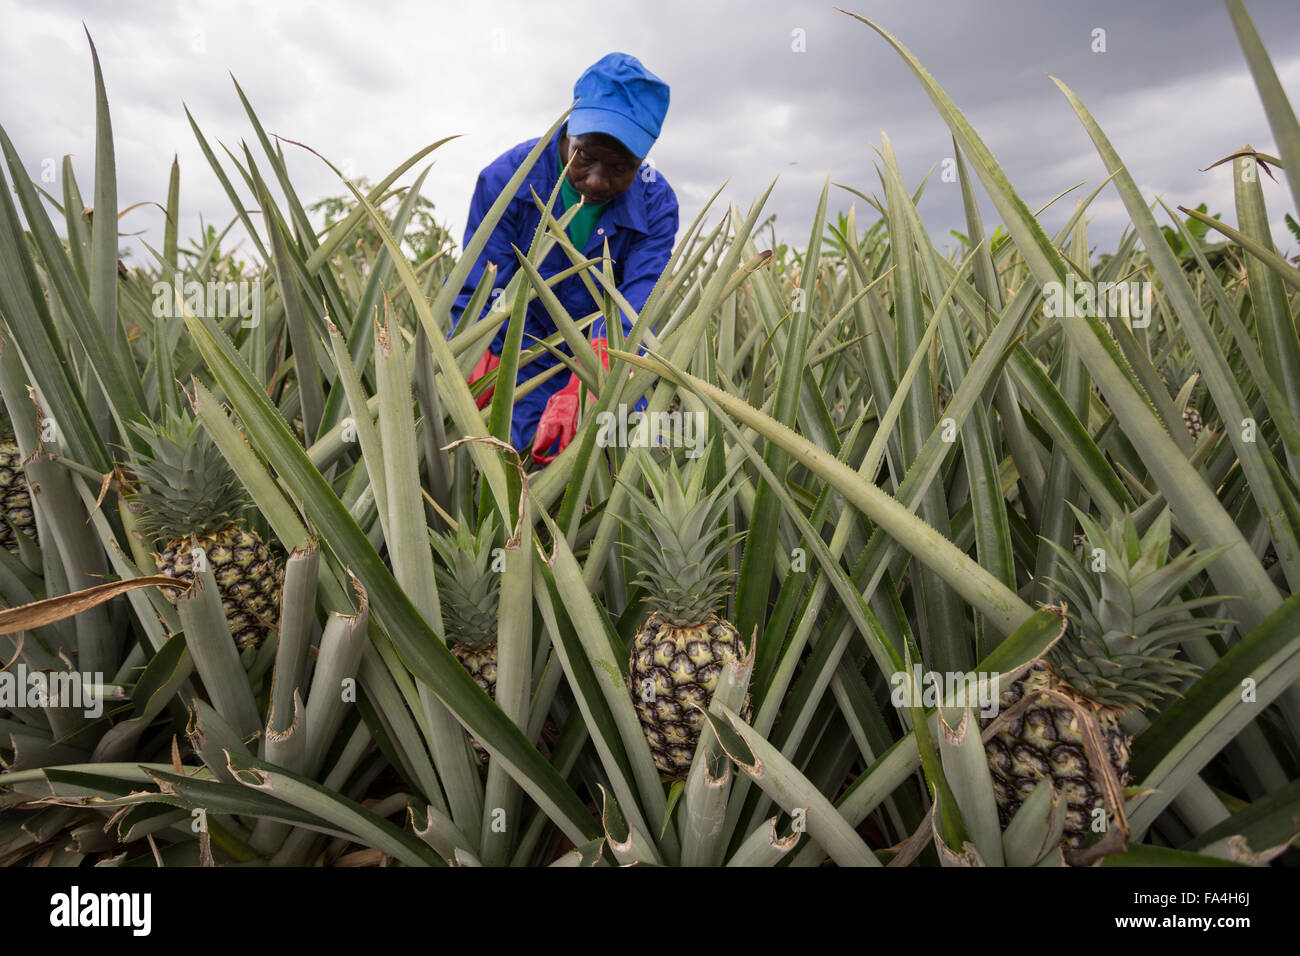 Commercial pineapple farming in Fotobi village, Ghana. Stock Photo